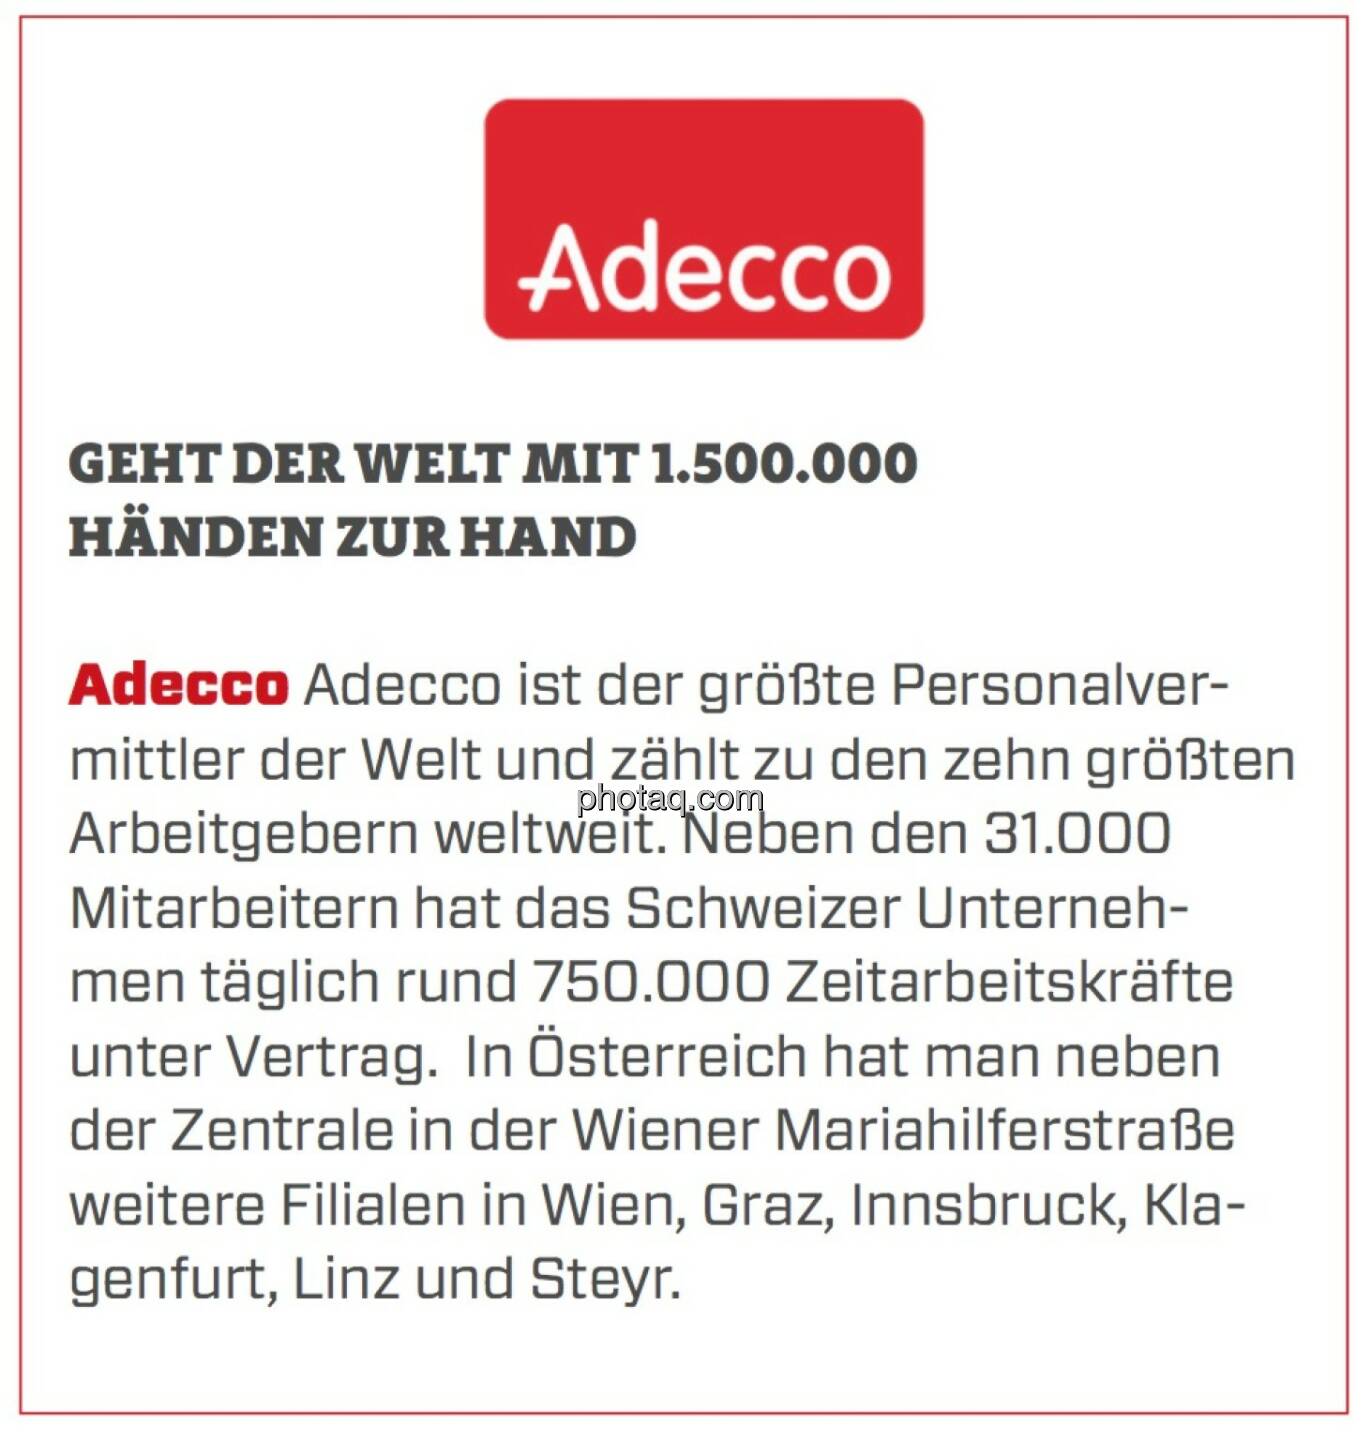 Adecco - Geht der Welt mit 1.500.000 Händen zur Hand: Adecco ist der größte Personalvermittler der Welt und zählt zu den zehn größten Arbeitgebern weltweit. Neben den 31.000 Mitarbeitern hat das Schweizer Unternehmen täglich rund 750.000 Zeitarbeitskräfte unter Vertrag.  In Österreich hat man neben der Zentrale in der Wiener Mariahilferstraße weitere Filialen in Wien, Graz, Innsbruck, Klagenfurt, Linz und Steyr.